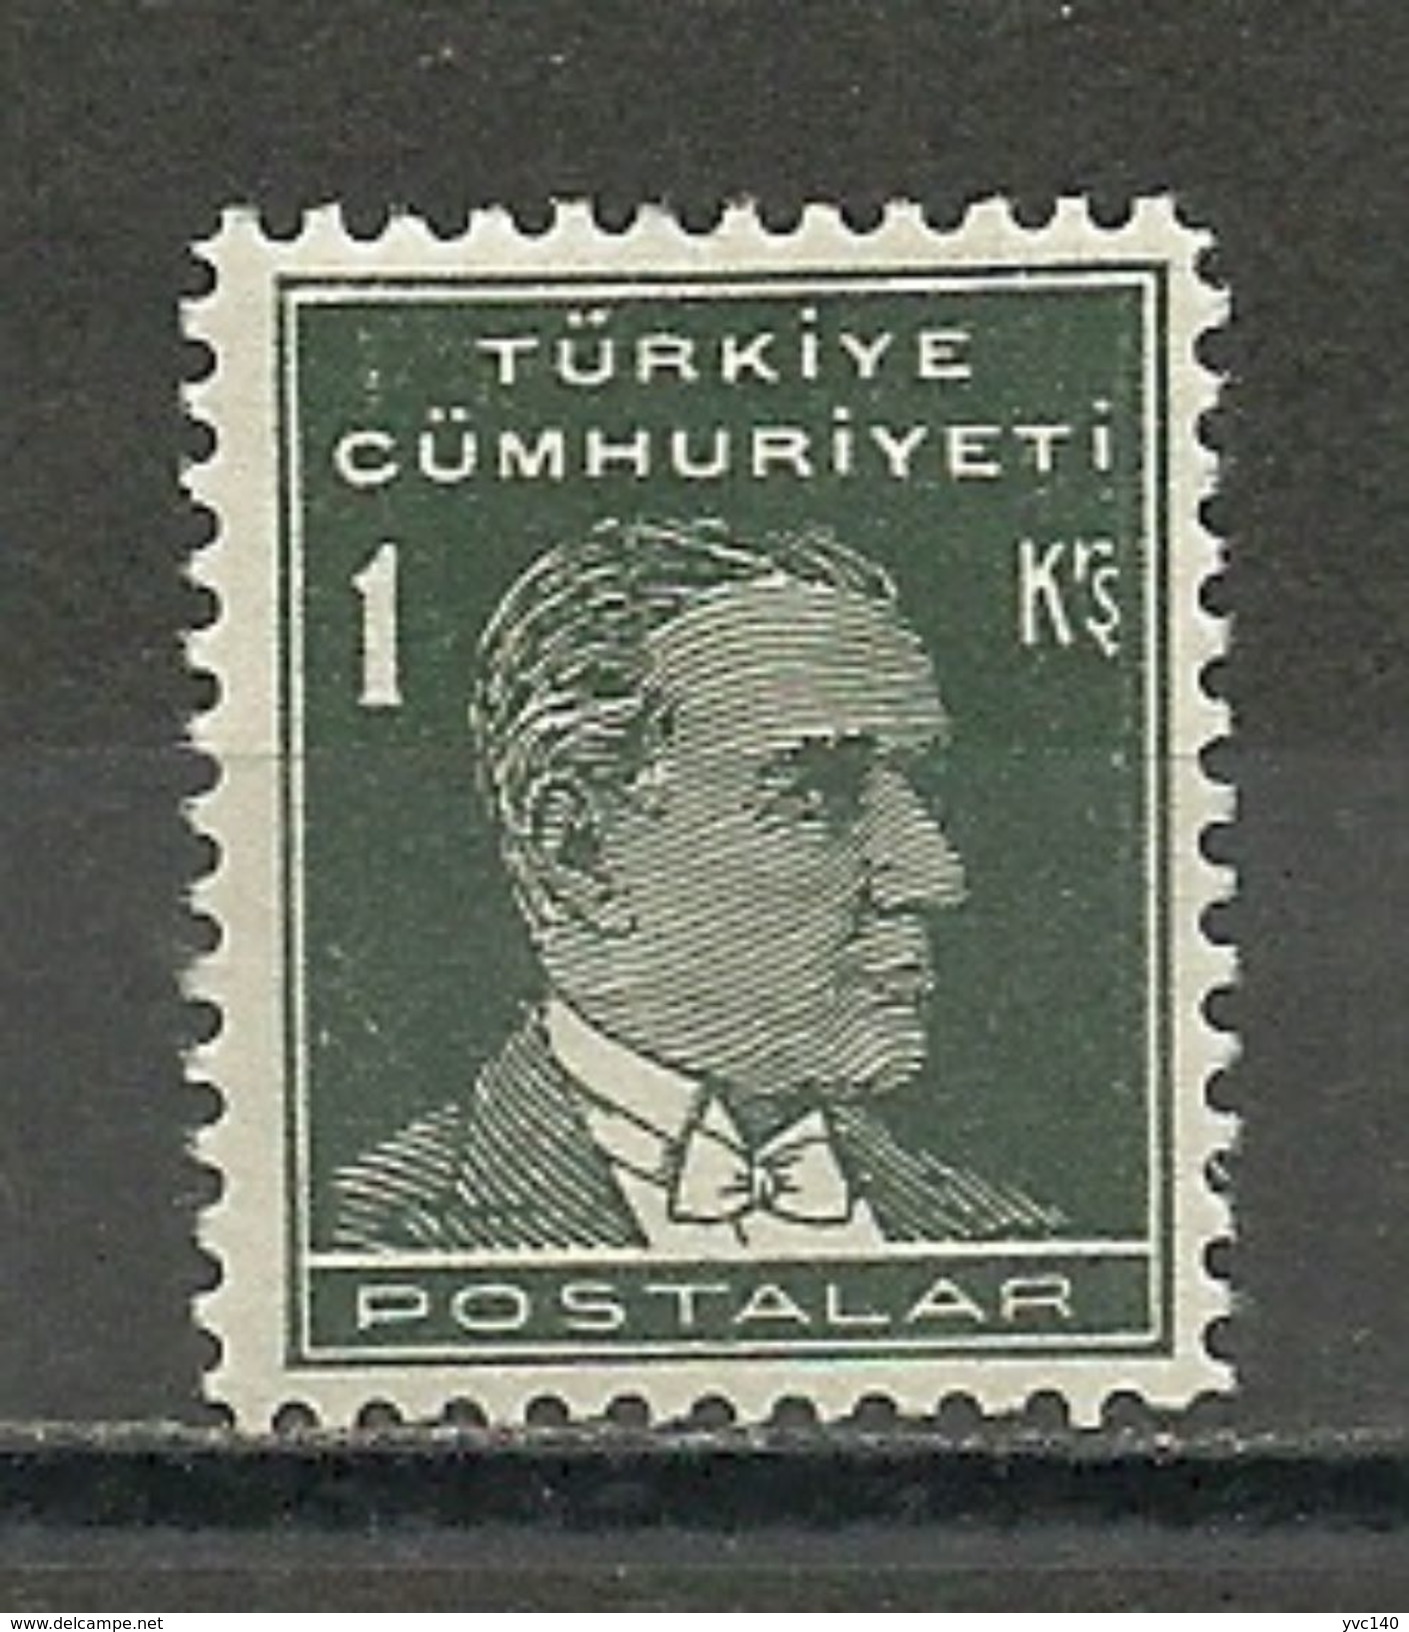 Turkey; 1931 1st Ataturk Issue Stamp 1 K. ERROR ("Postalar" Instead Of "Postalari") - Ungebraucht